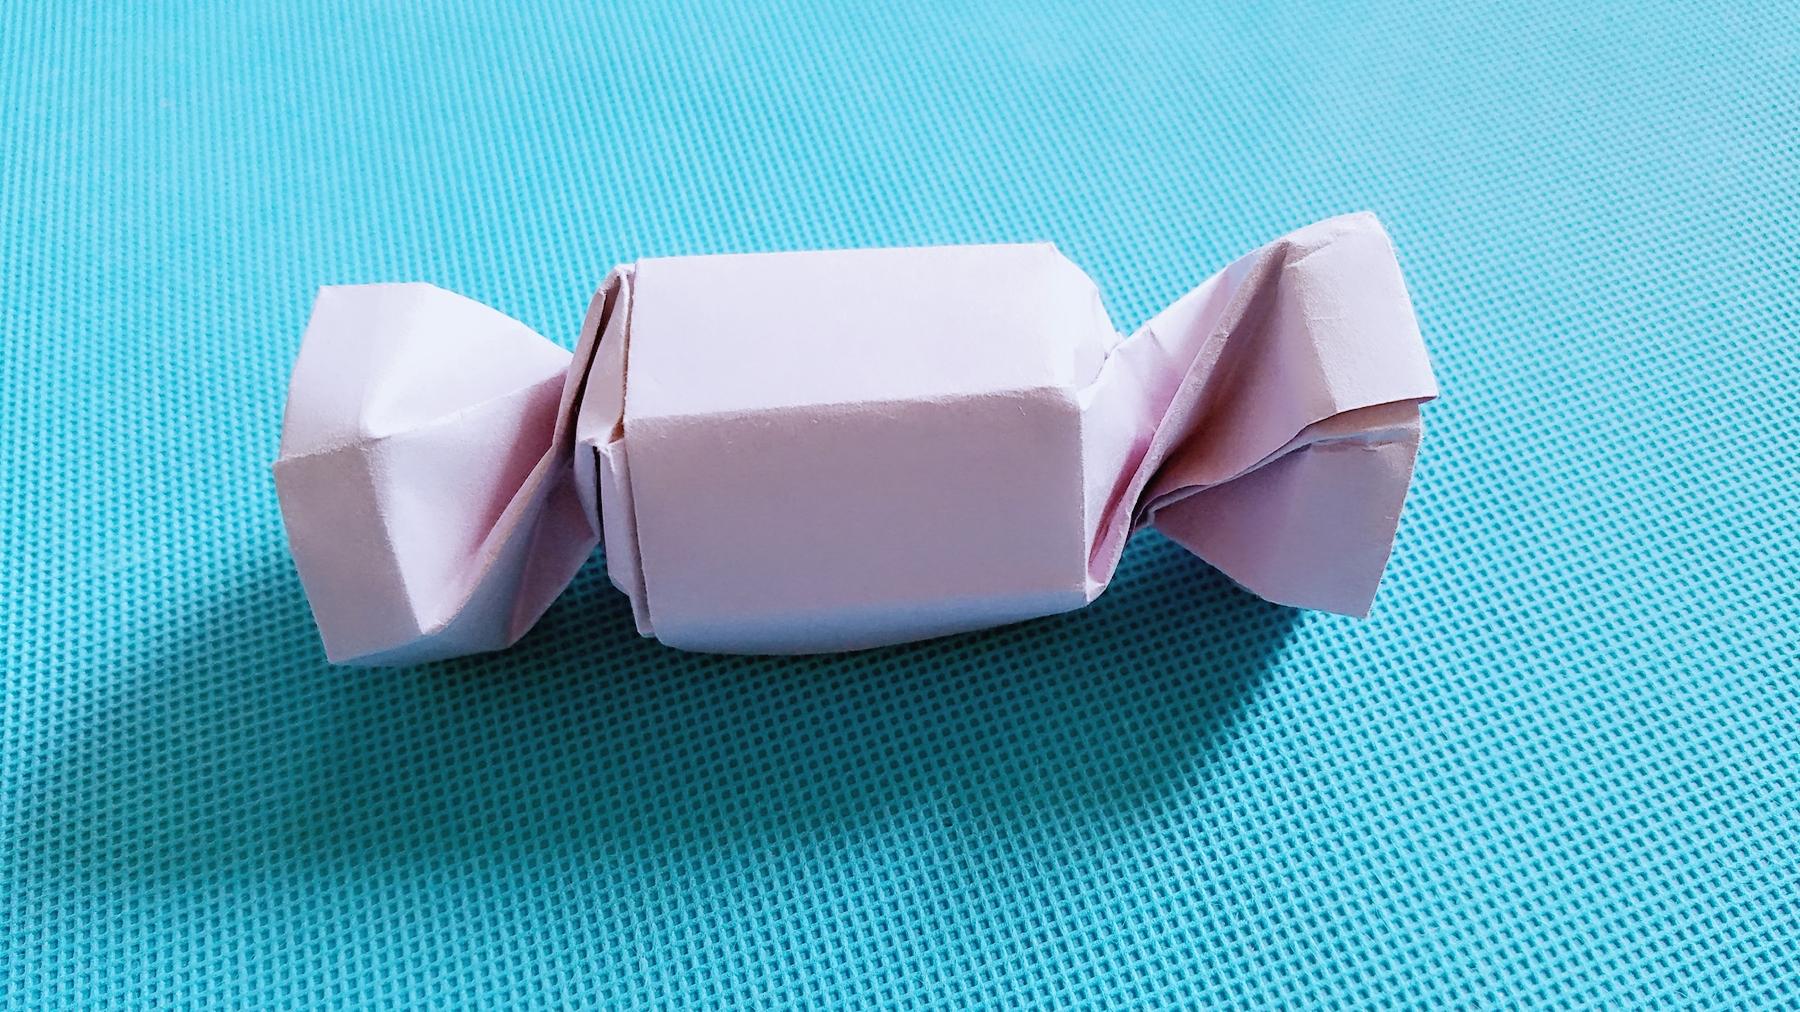 折纸王子教你糖果盒子,折纸大全简单又漂亮,留着教孩子-折纸王子频道